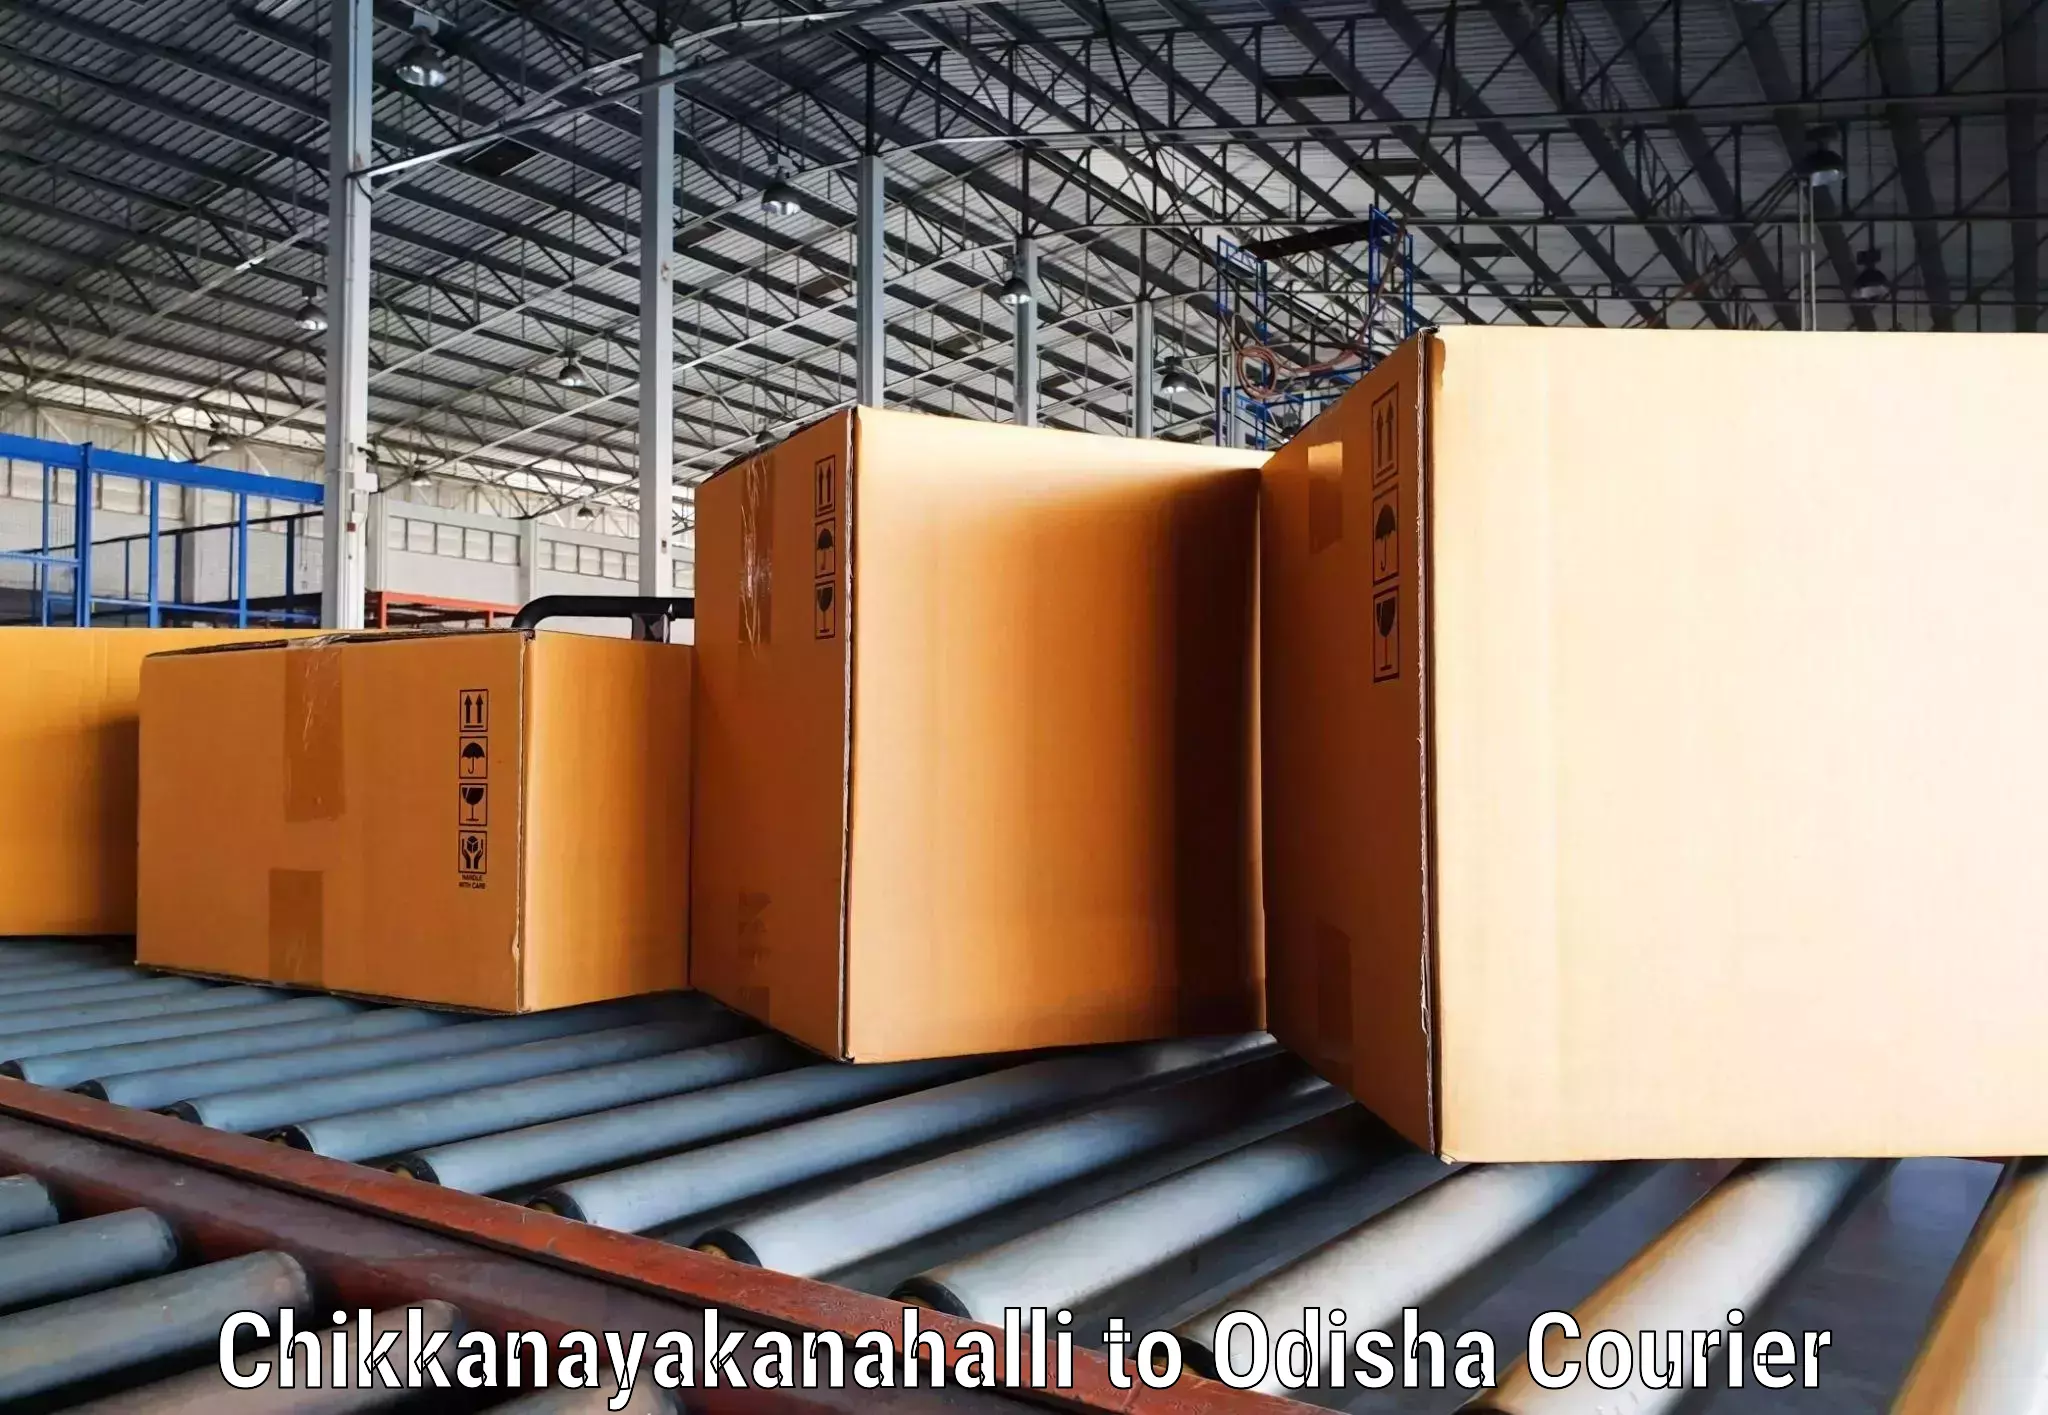 High-capacity shipping options in Chikkanayakanahalli to Kamakhyanagar